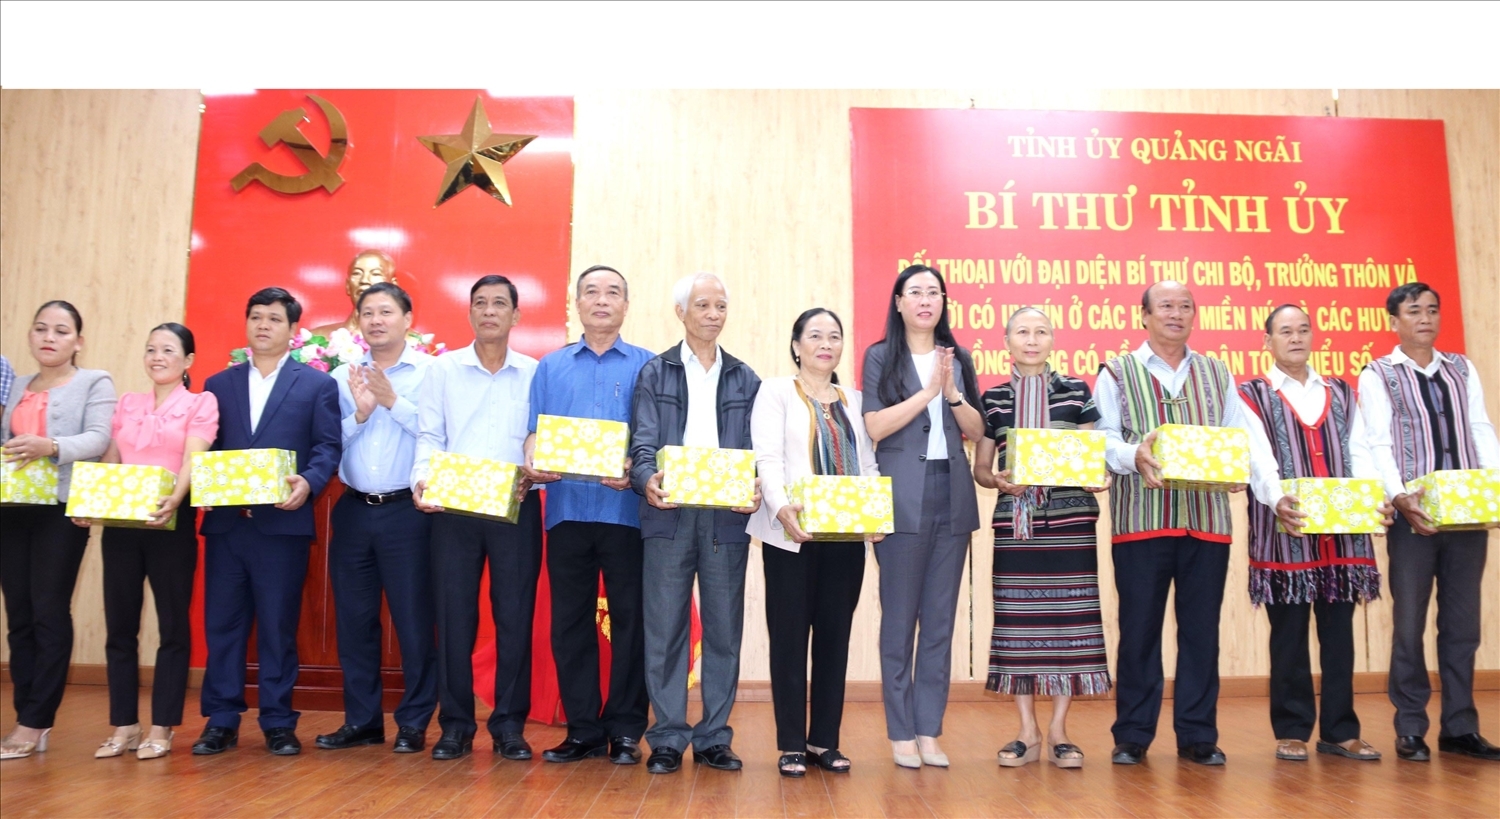 Bí thư Tỉnh ủy Quảng Ngãi Bùi Thị Quỳnh Vân tặng quà cho NCUT